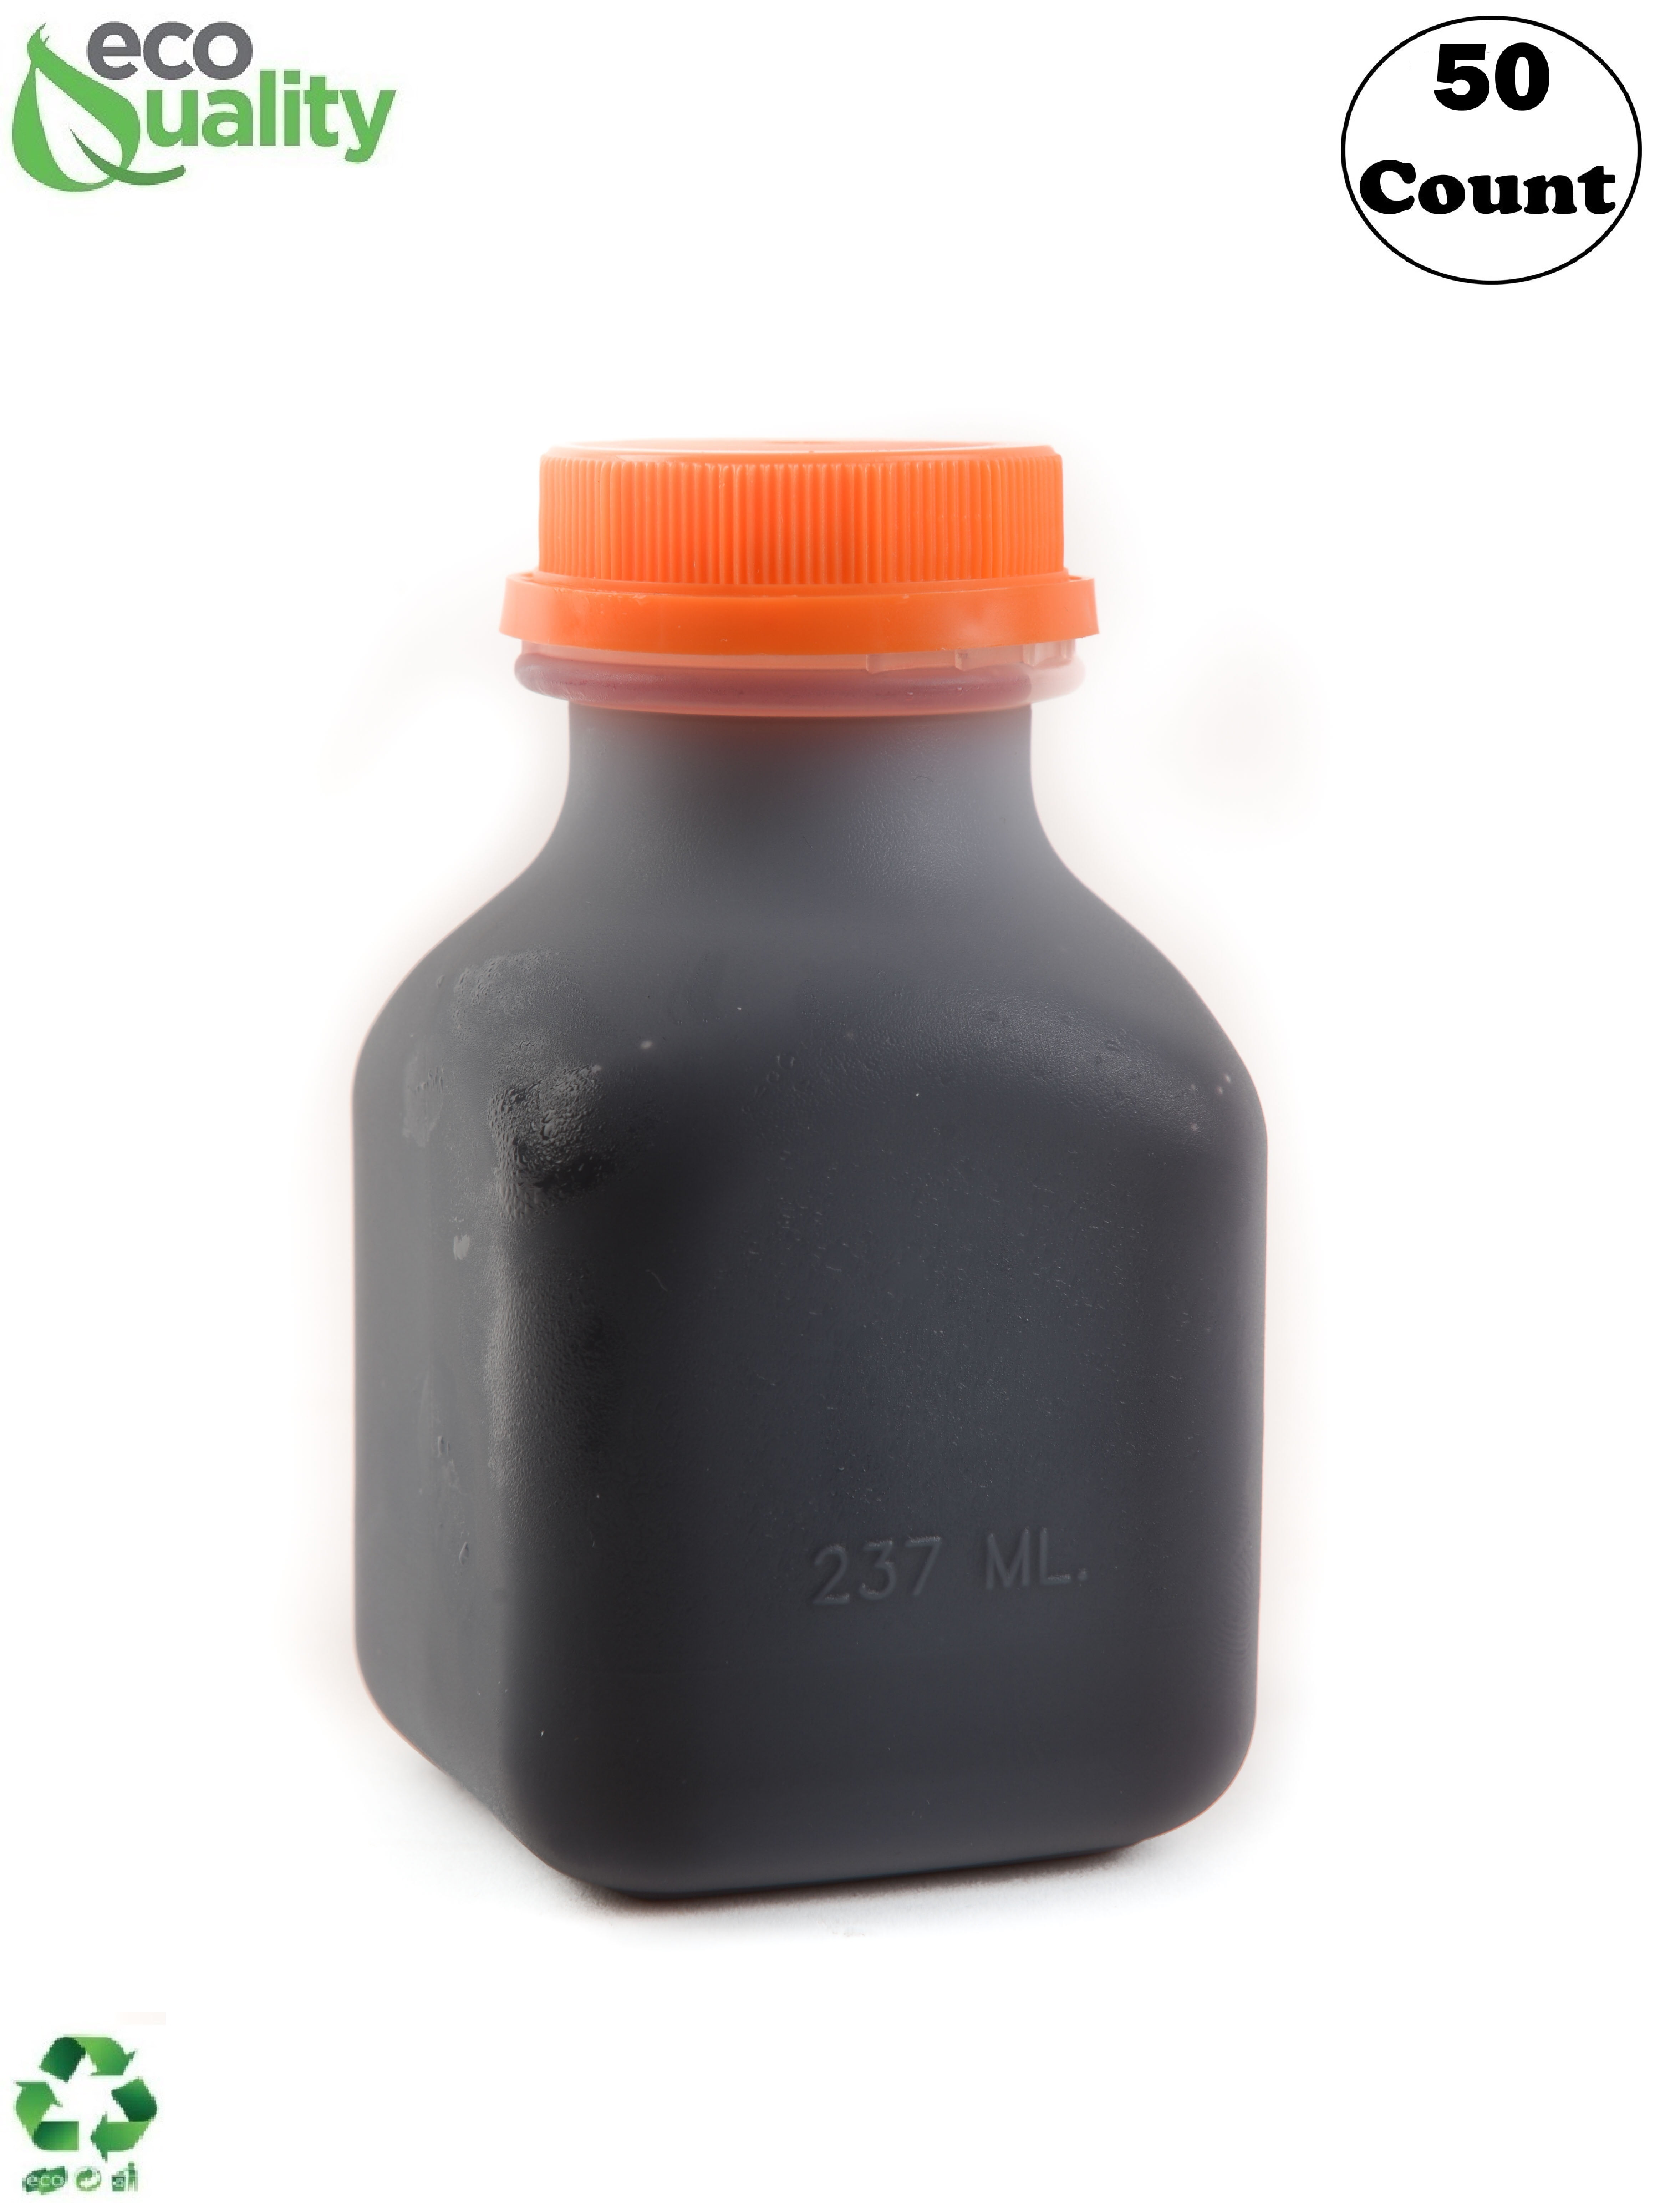 8 oz. Square Carafe PET Clear Juice Bottle - 360/Box